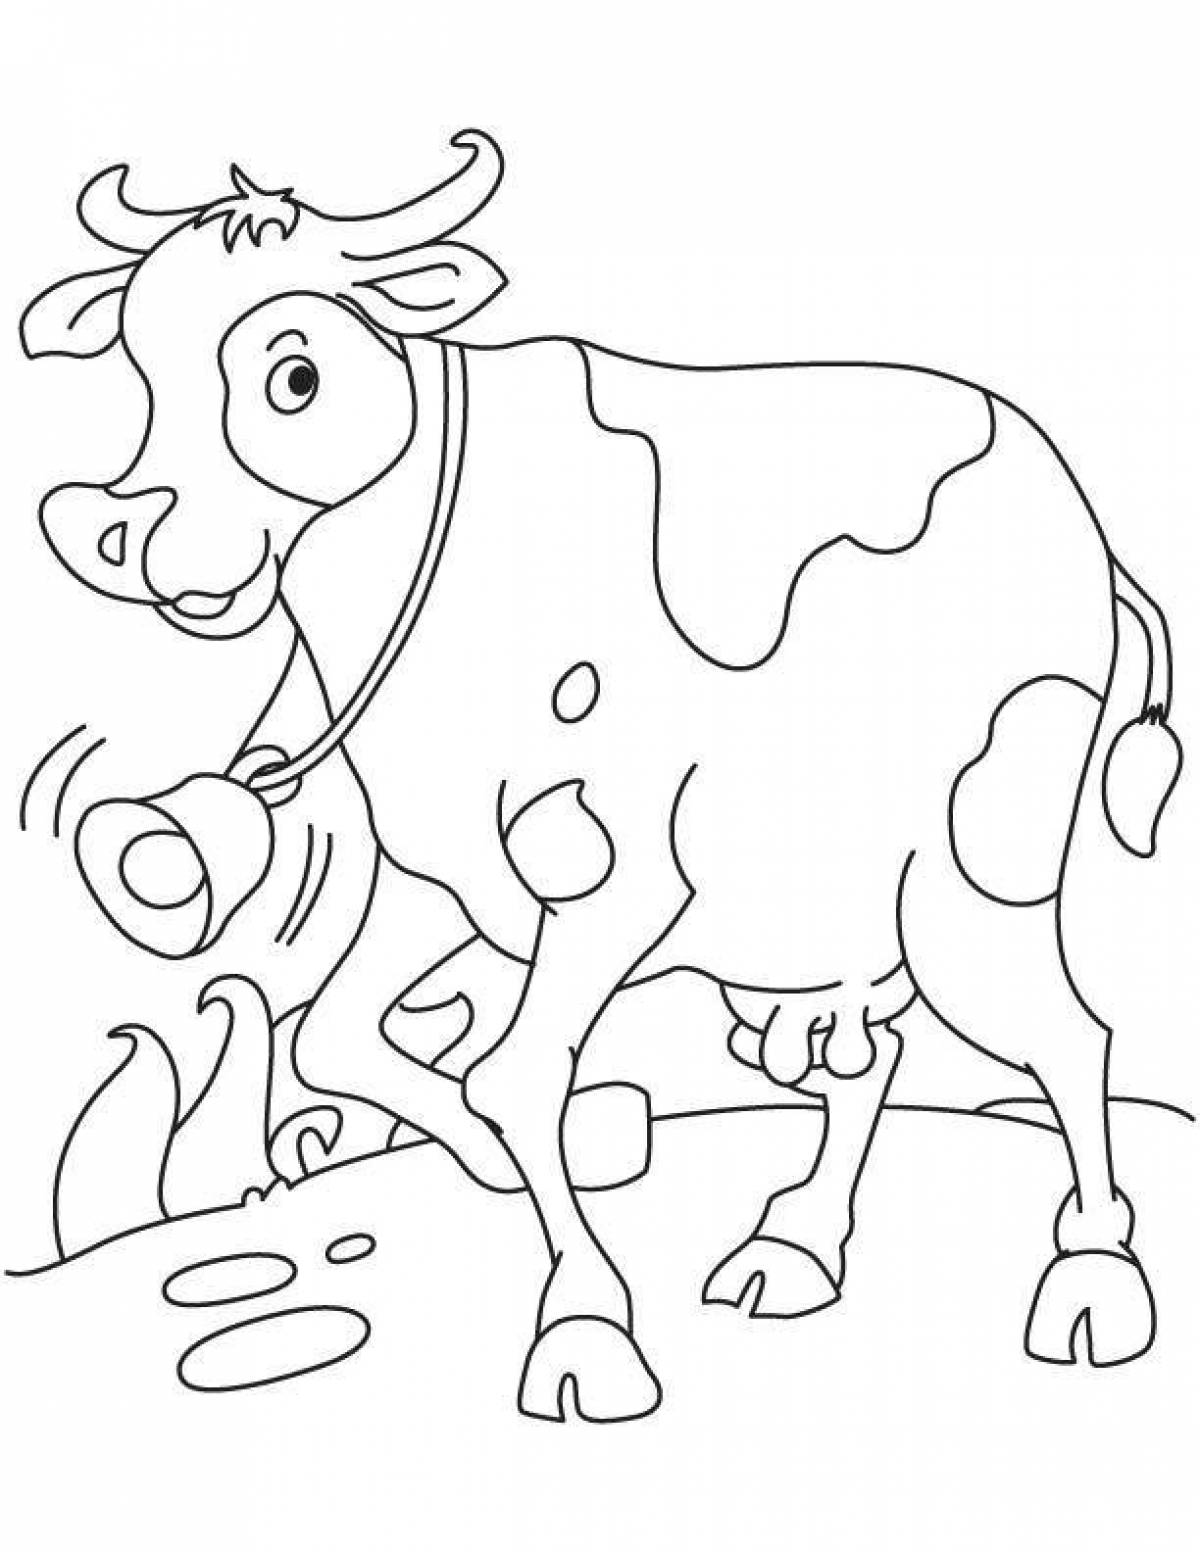 Раскраски для детей 3 года коровы. Раскраска корова. Корова раскраска для детей. Раскраска корова для детей 5-6 лет. Корова раскраска для детей 4-5 лет.